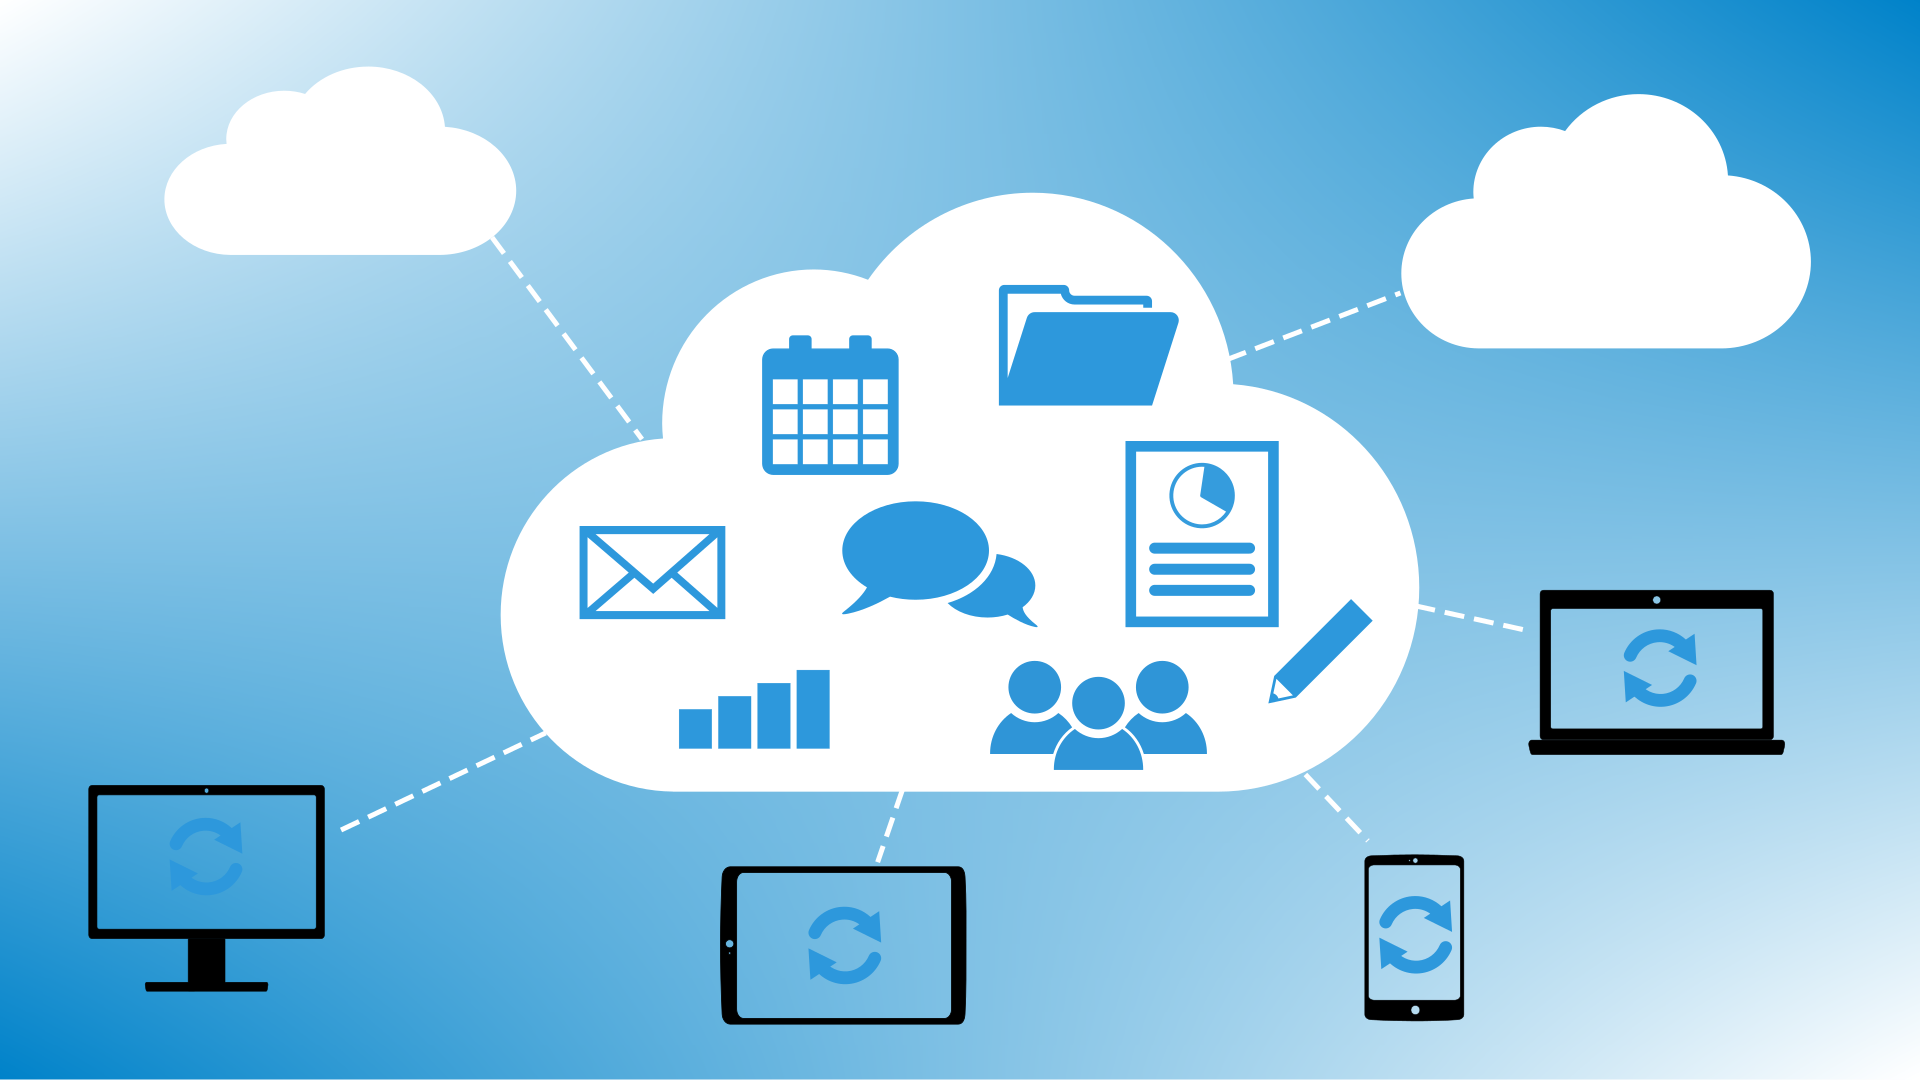 Wolke mit Symbolen (Ordner, Dokument, Kalender, Sprechblasen, Mail), die die Nextcloudfunktionen darstellen. Mit der Wolke sind ein Laptop, ein Tablet und ein Smartphone verbunden.